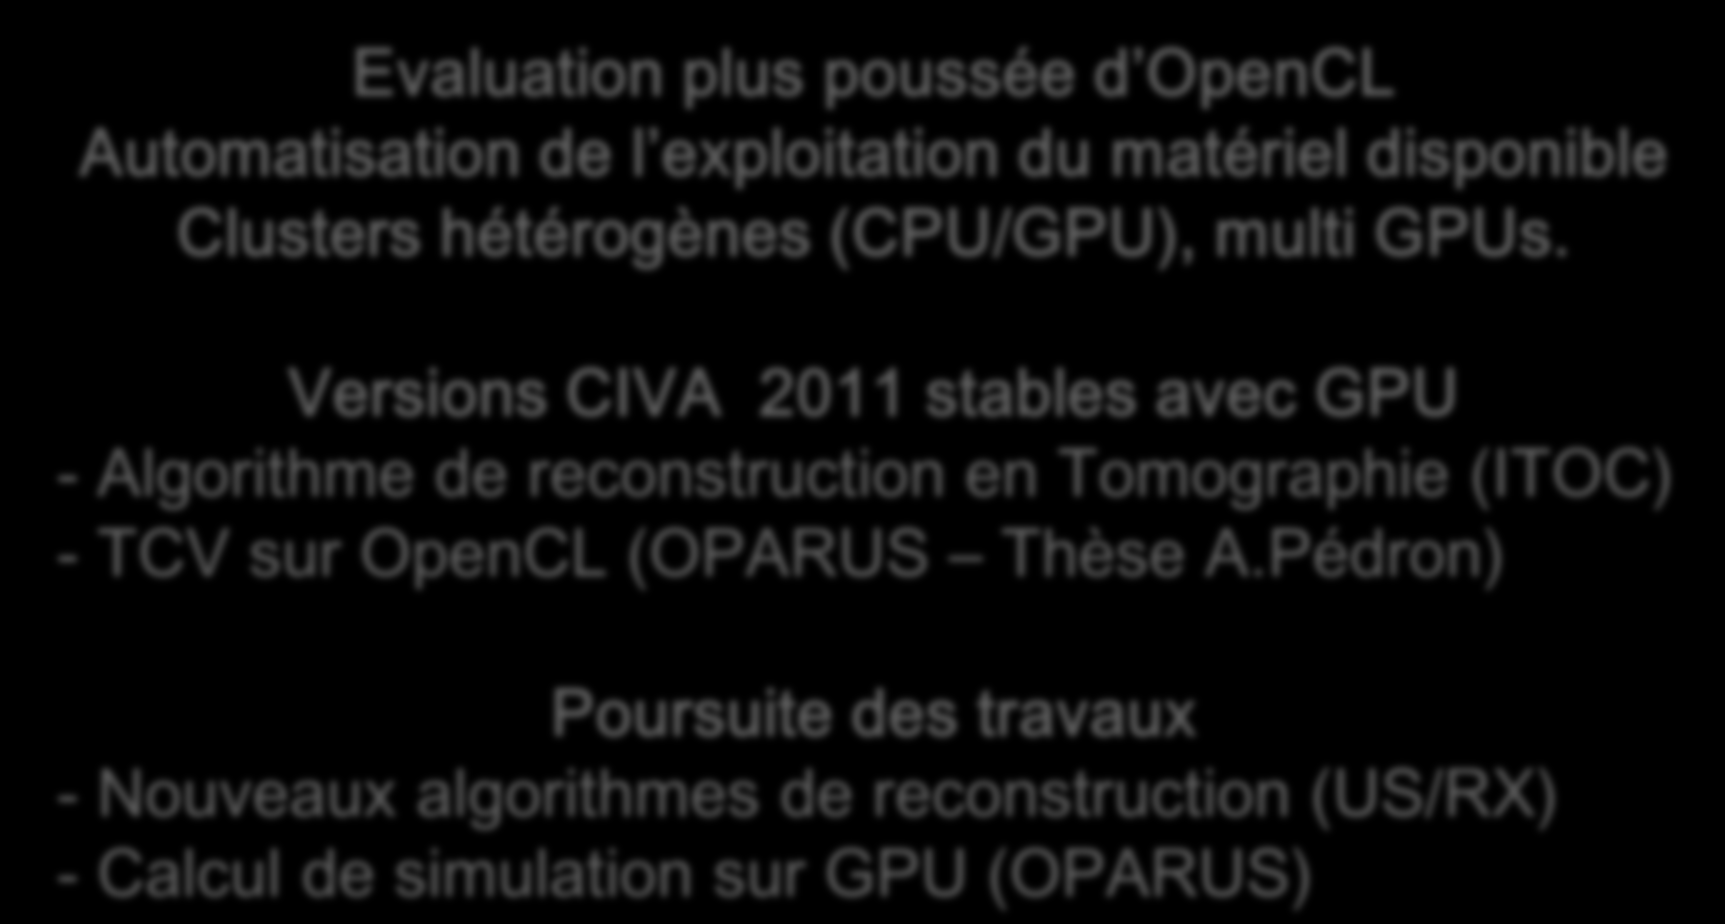 Perspectives Evaluation plus poussée d OpenCL Automatisation de l exploitation du matériel disponible Clusters hétérogènes (CPU/GPU), multi GPUs.